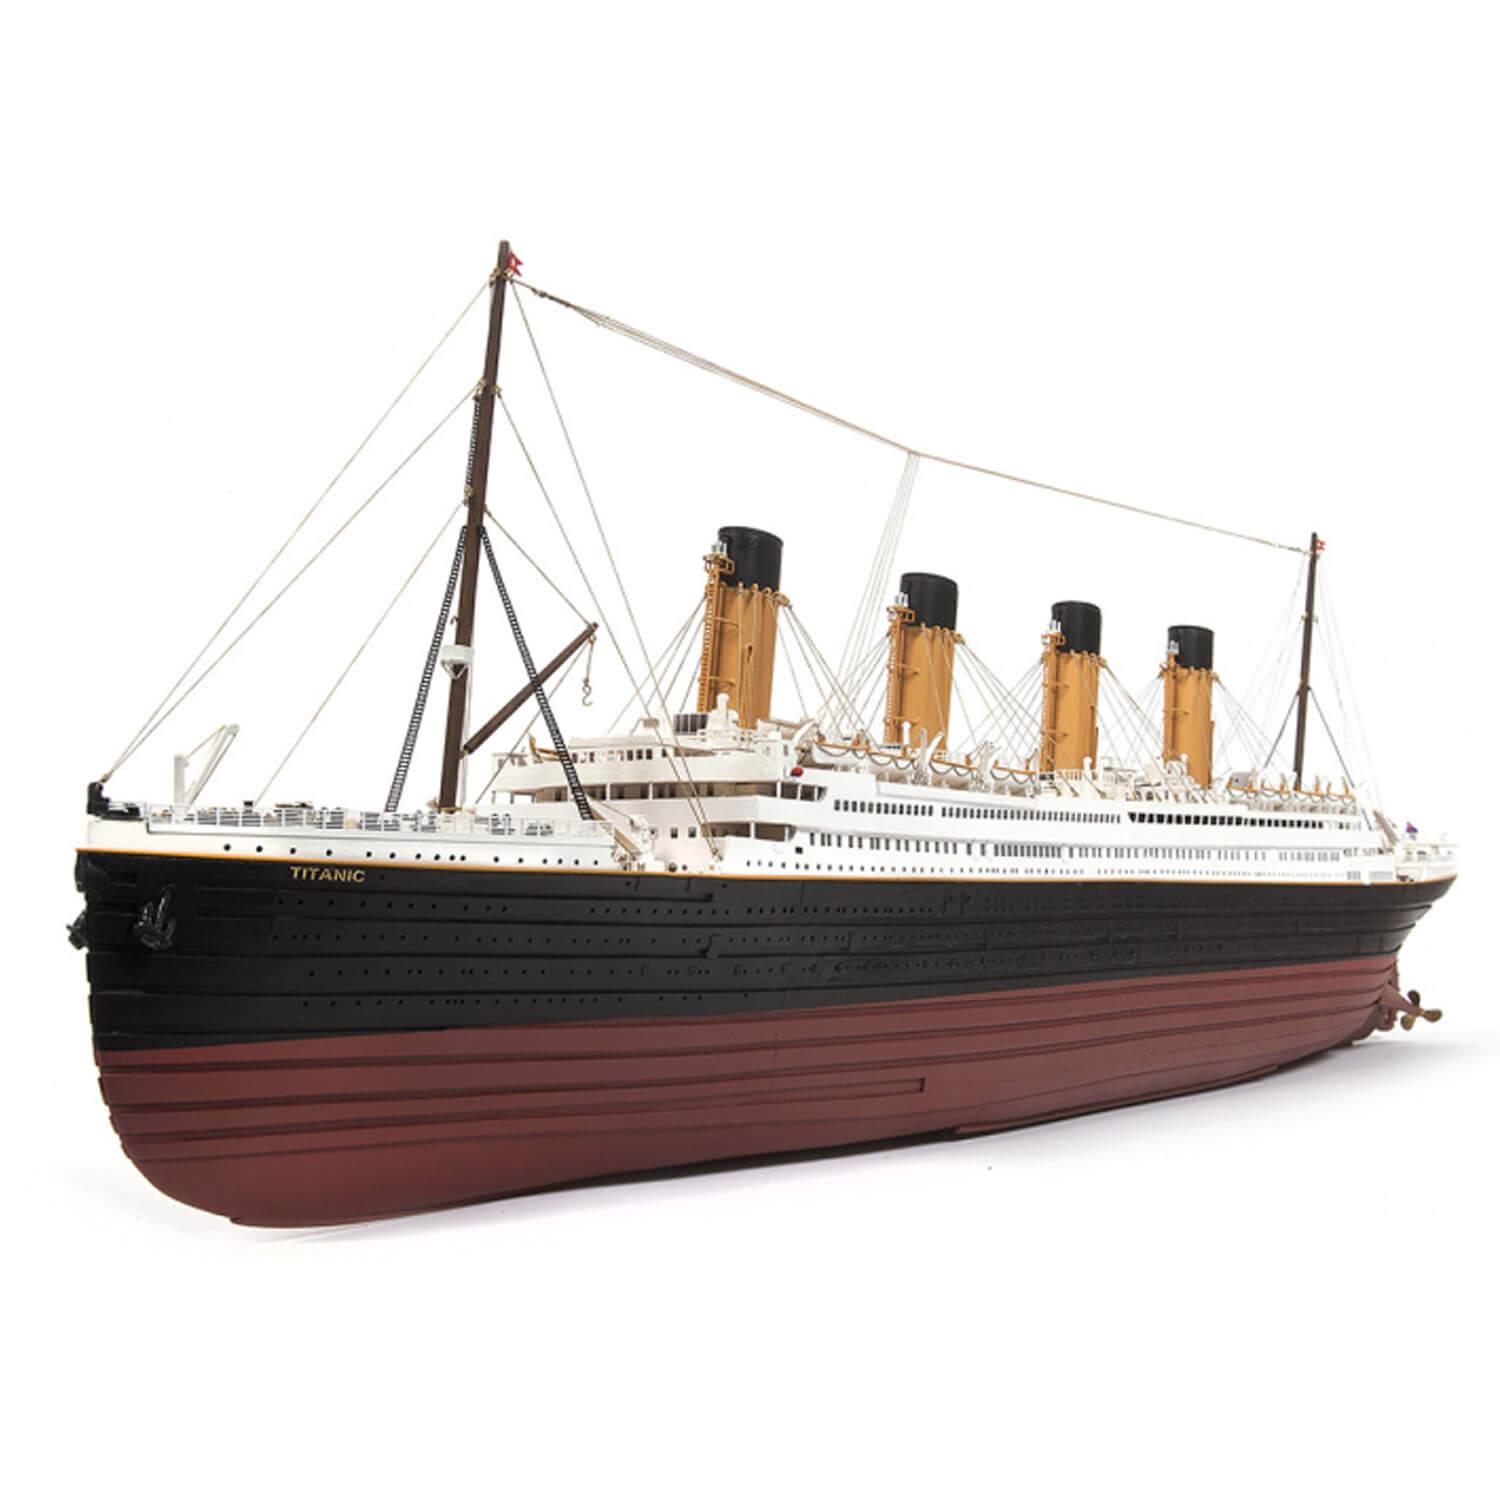 Maqueta de barco de madera: RMS Titanic - OCCRE - Calle De Las